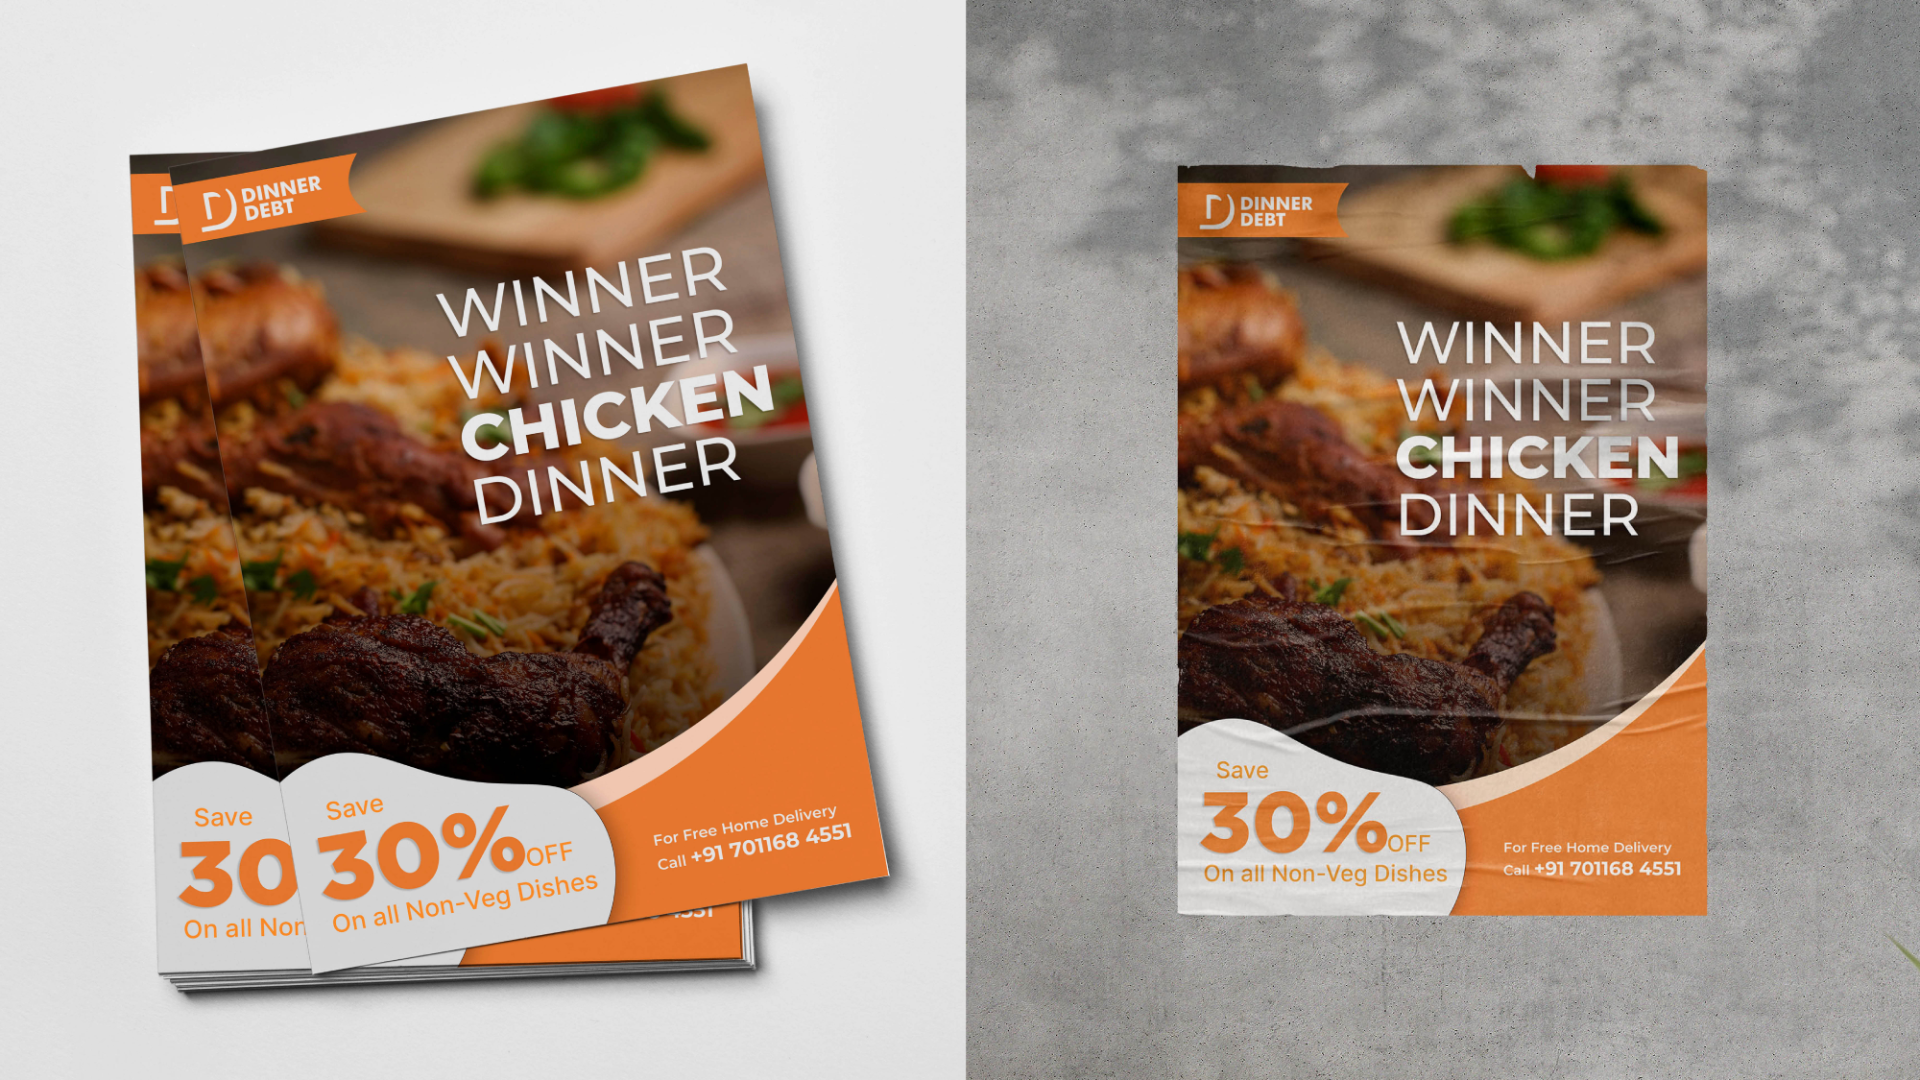 Dinner Debt Branding - Flyer Design